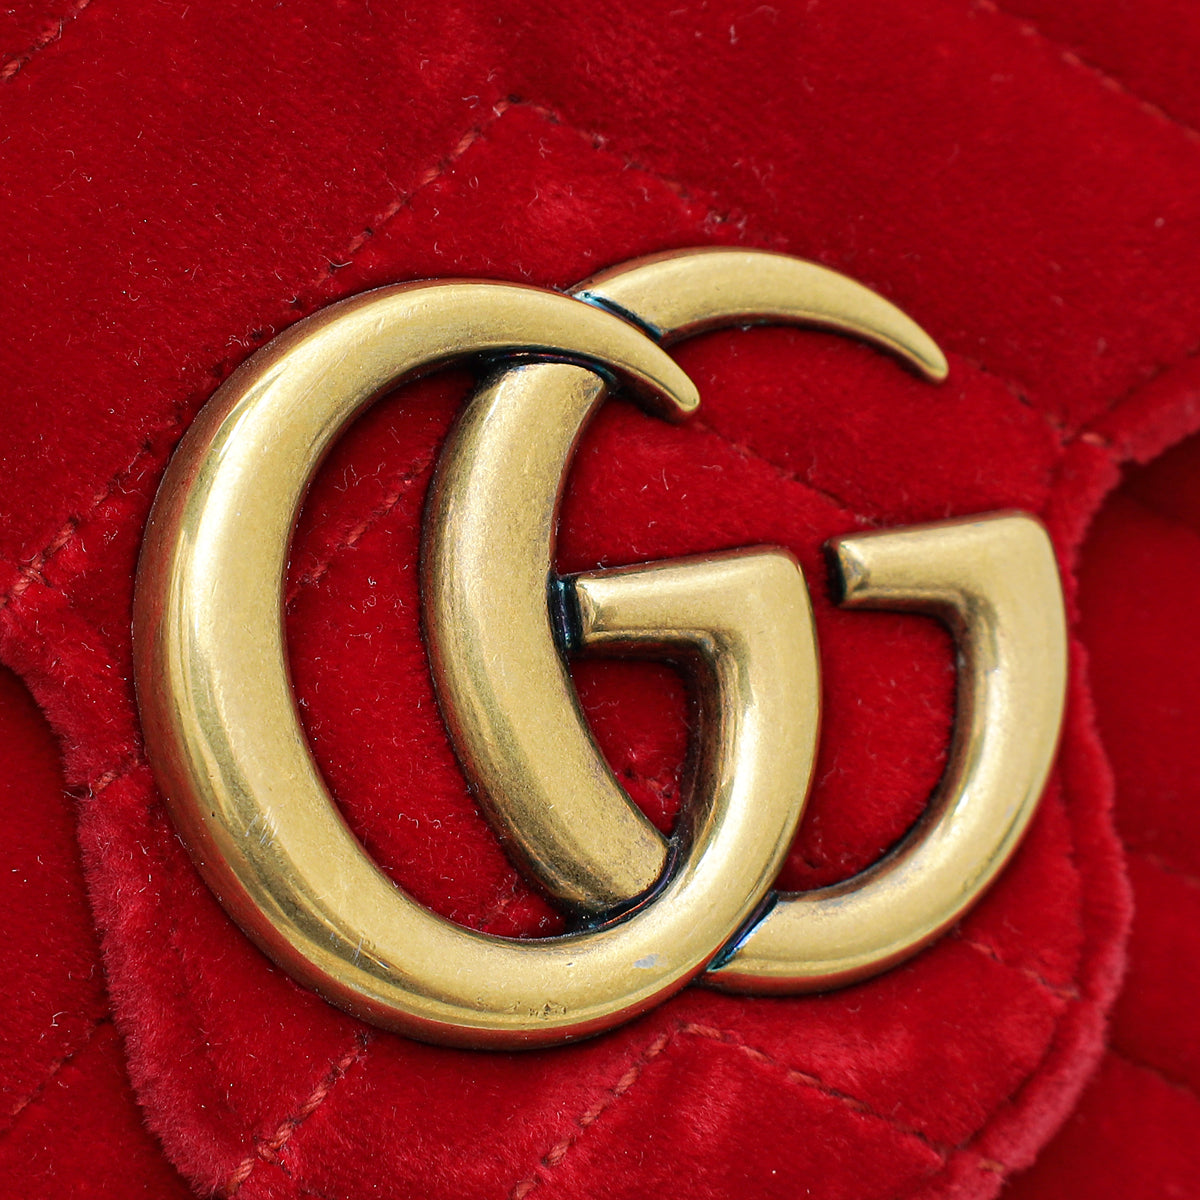 Gucci Red Velvet GG Marmont Mini Shoulder Bag